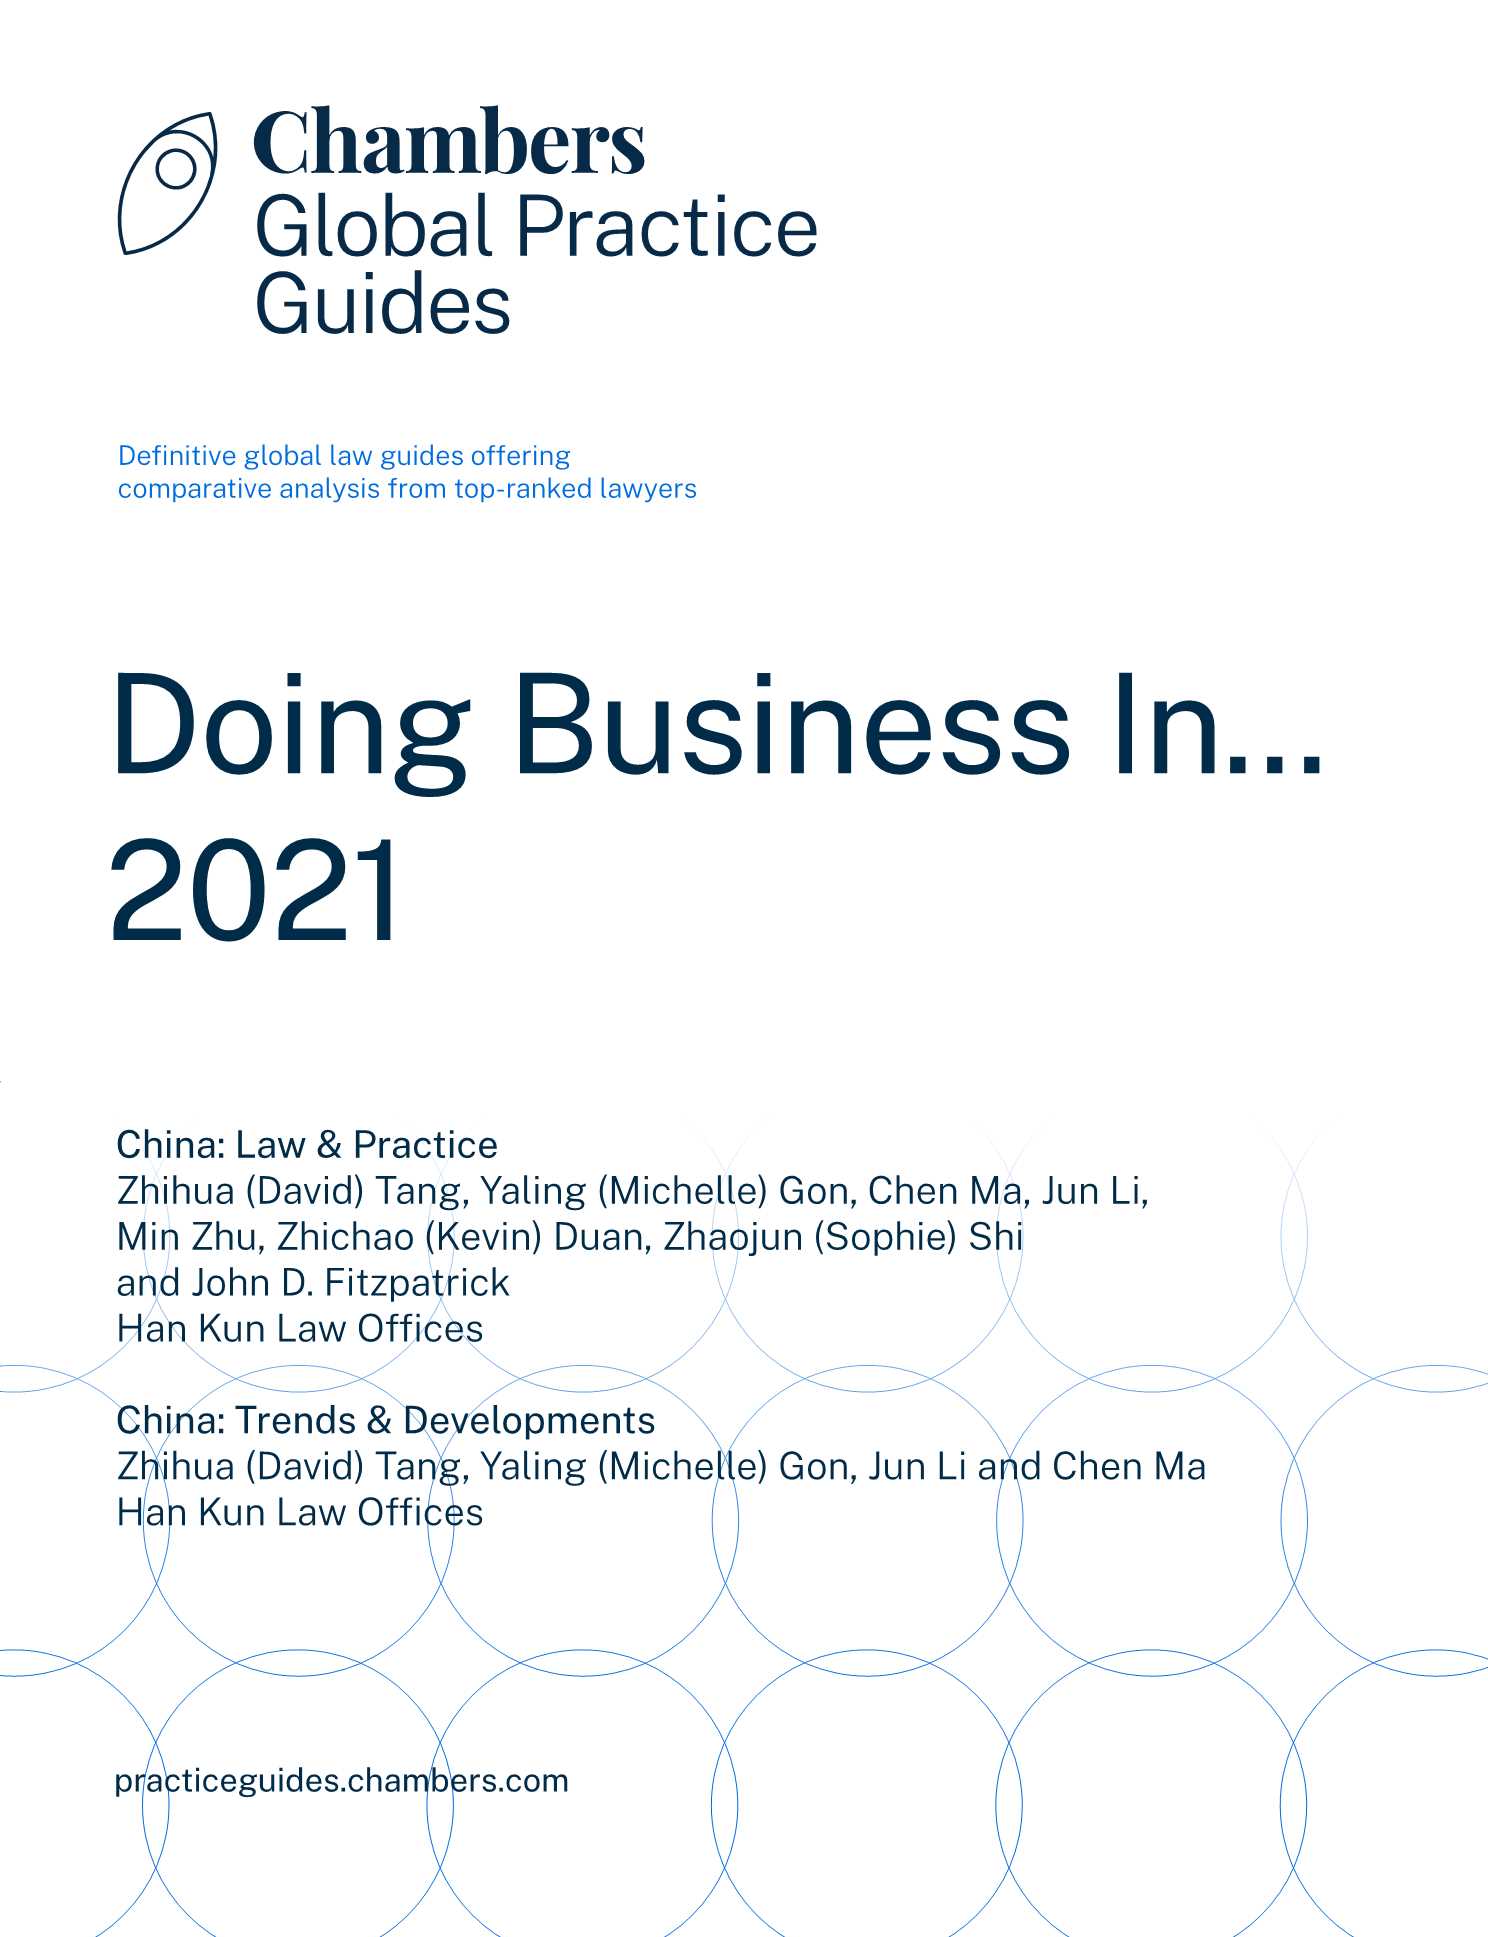 钱伯斯-2021年全球业务指南：在中国做生意-2021.08-30页